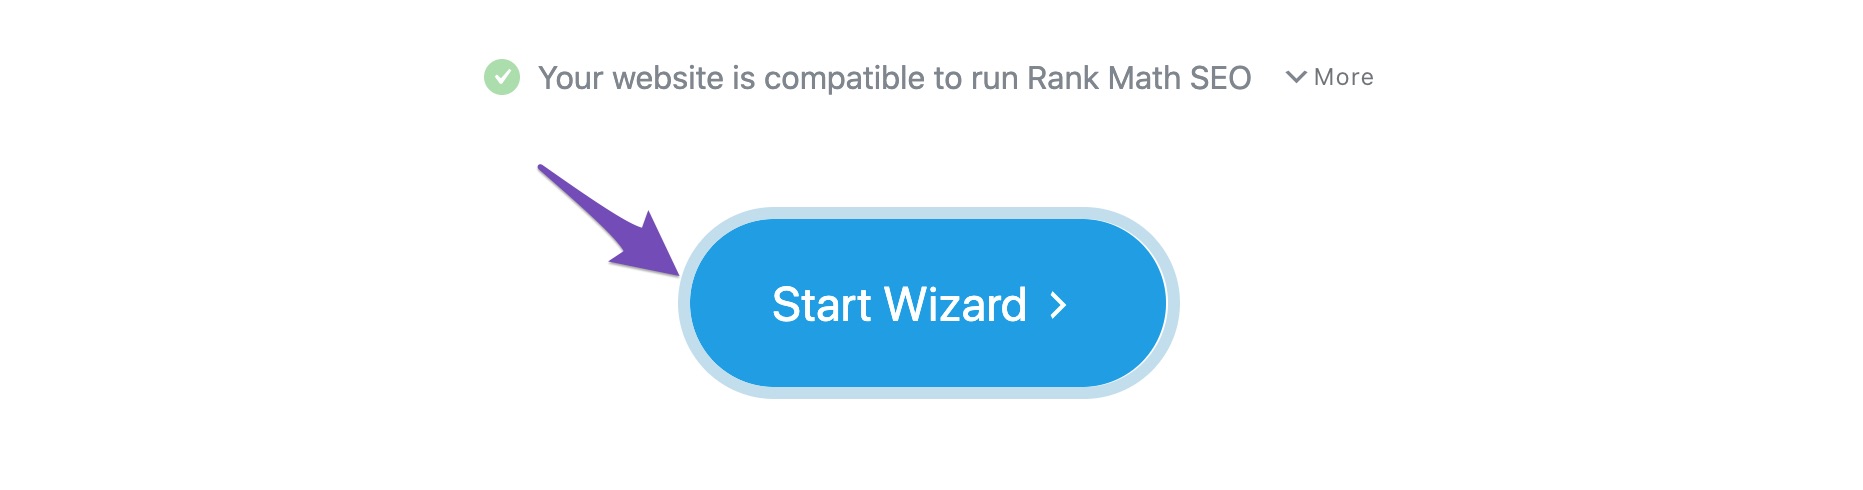 Start wizard to set up Rank Math